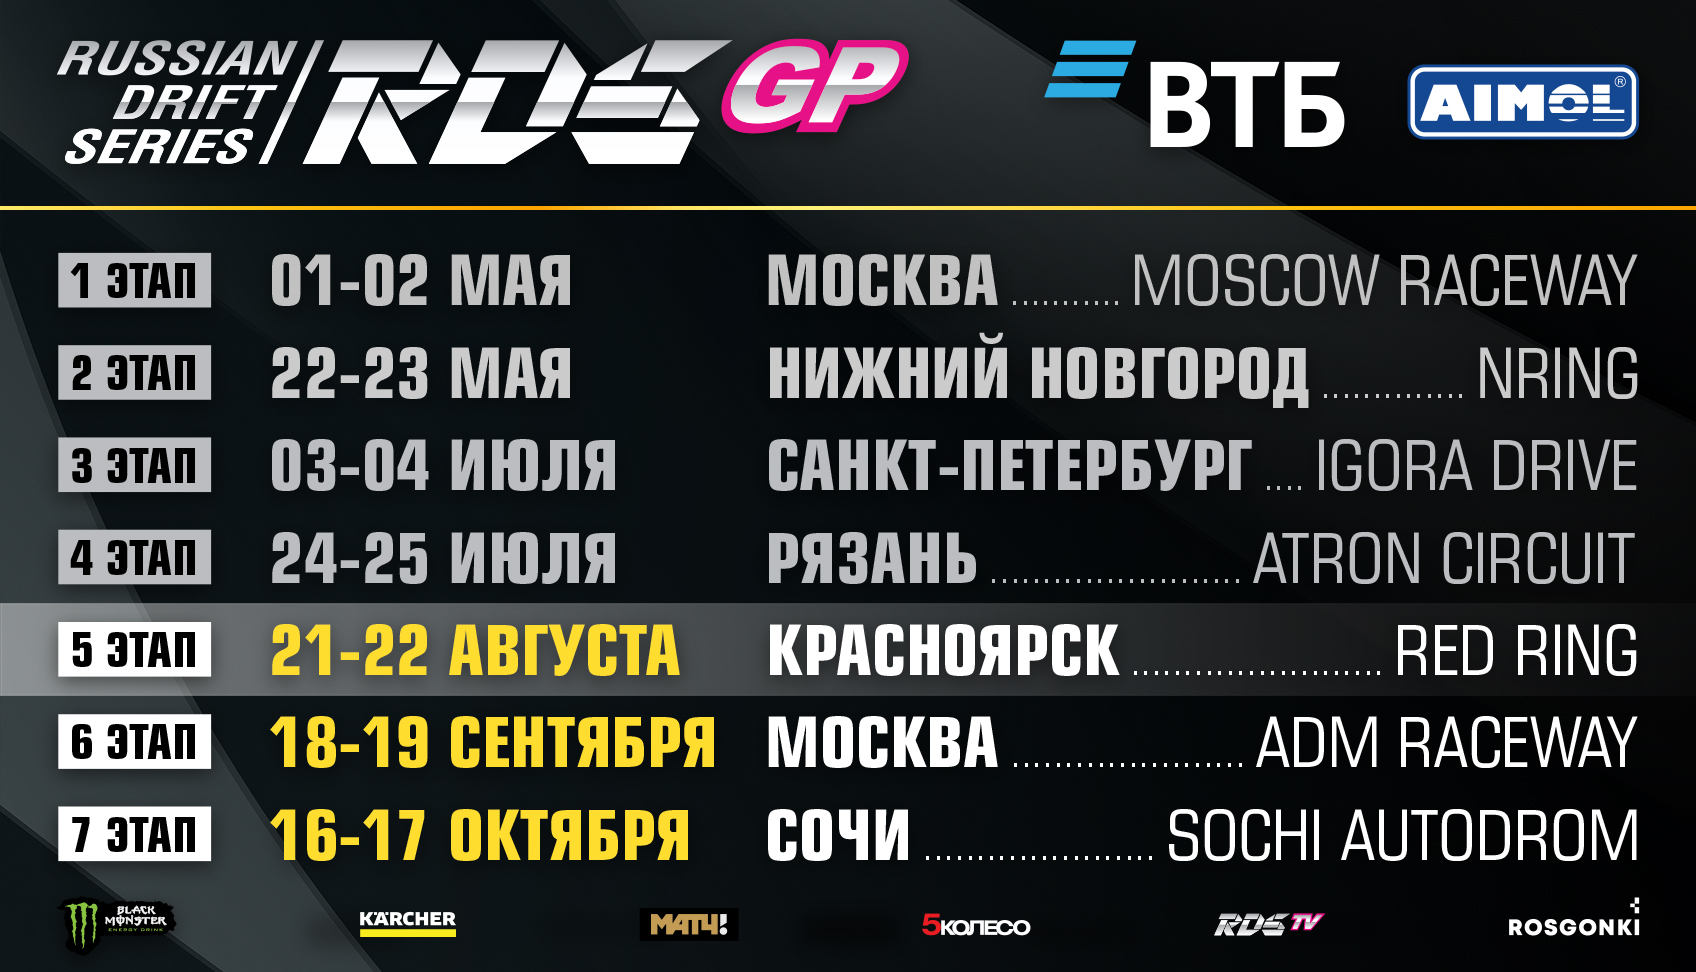 Russian Drift Series, Российская дрифт серия